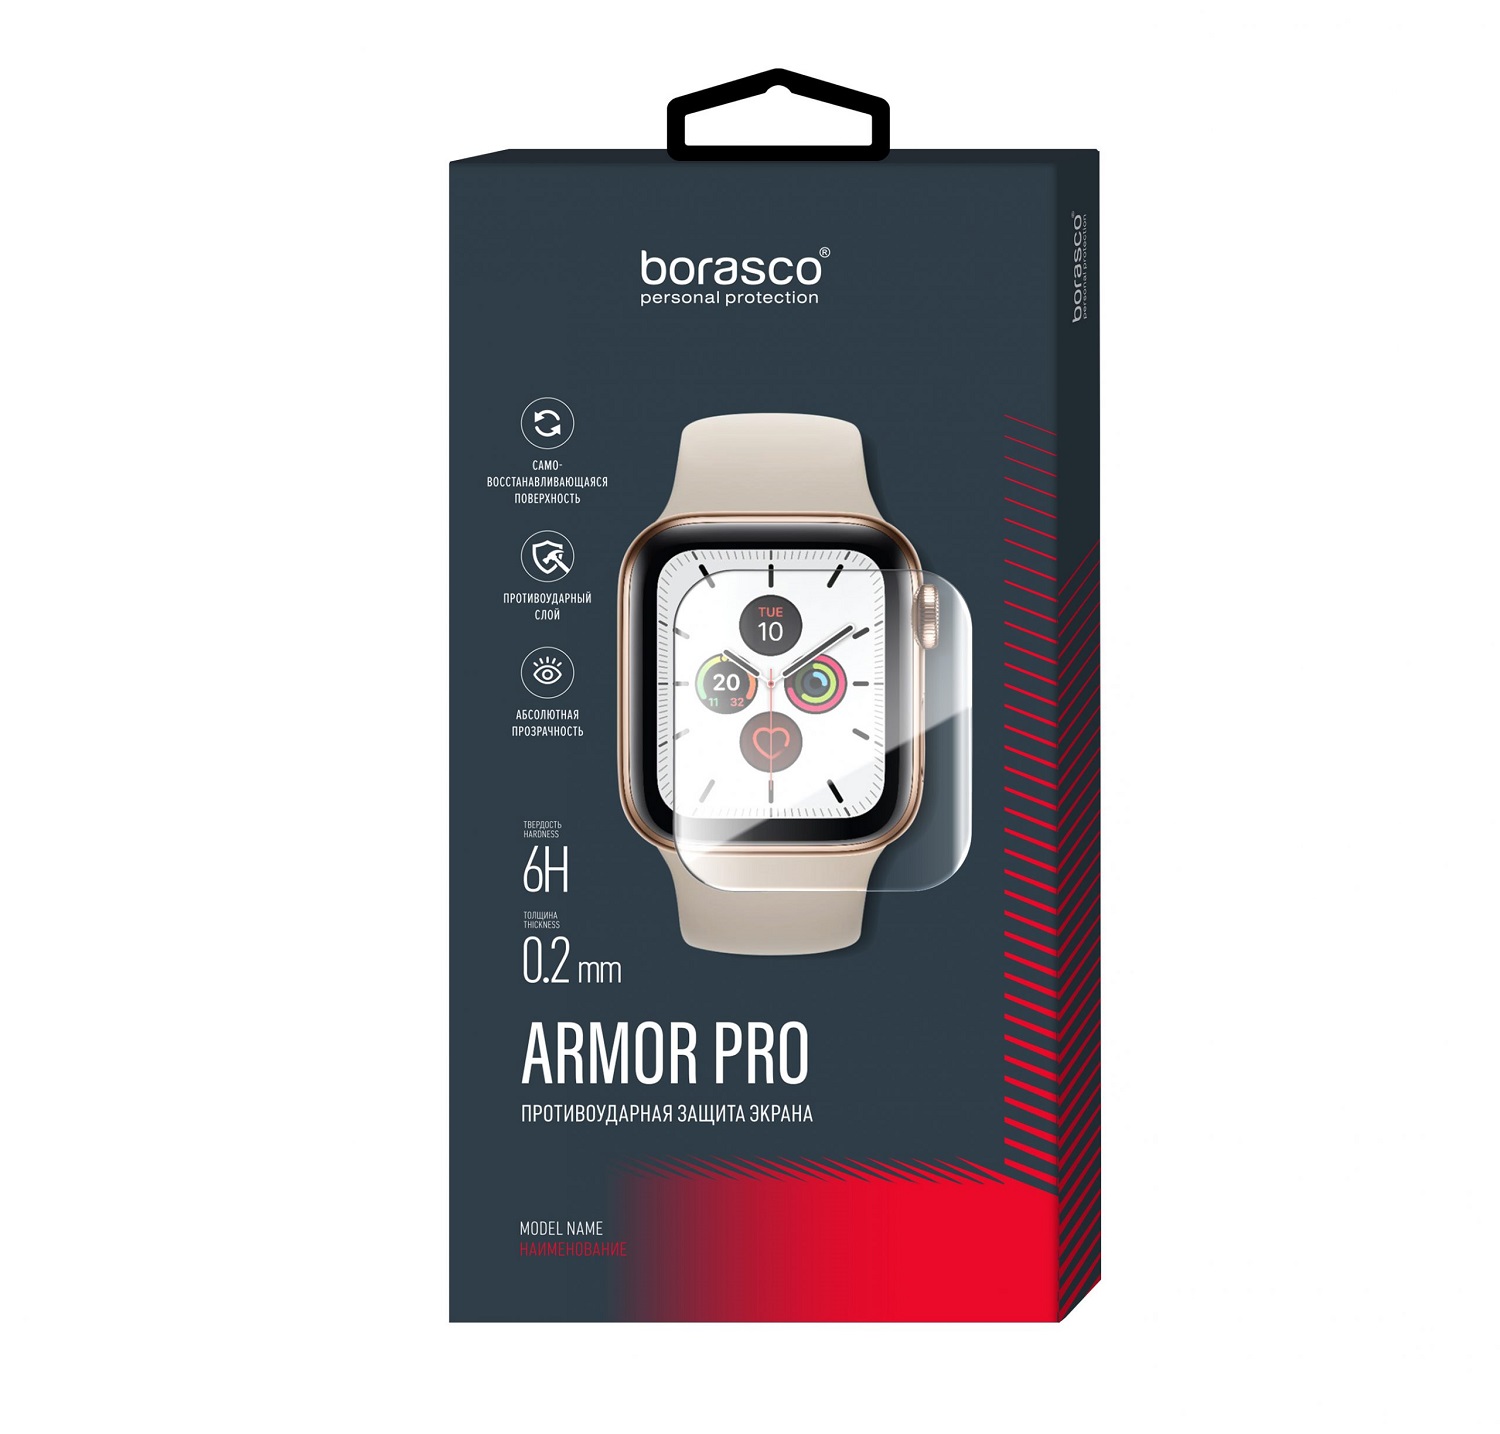 Защита экрана BoraSCO Armor Pro для Xiaomi Mi band 3 защита экрана borasco armor pro для honor band 3